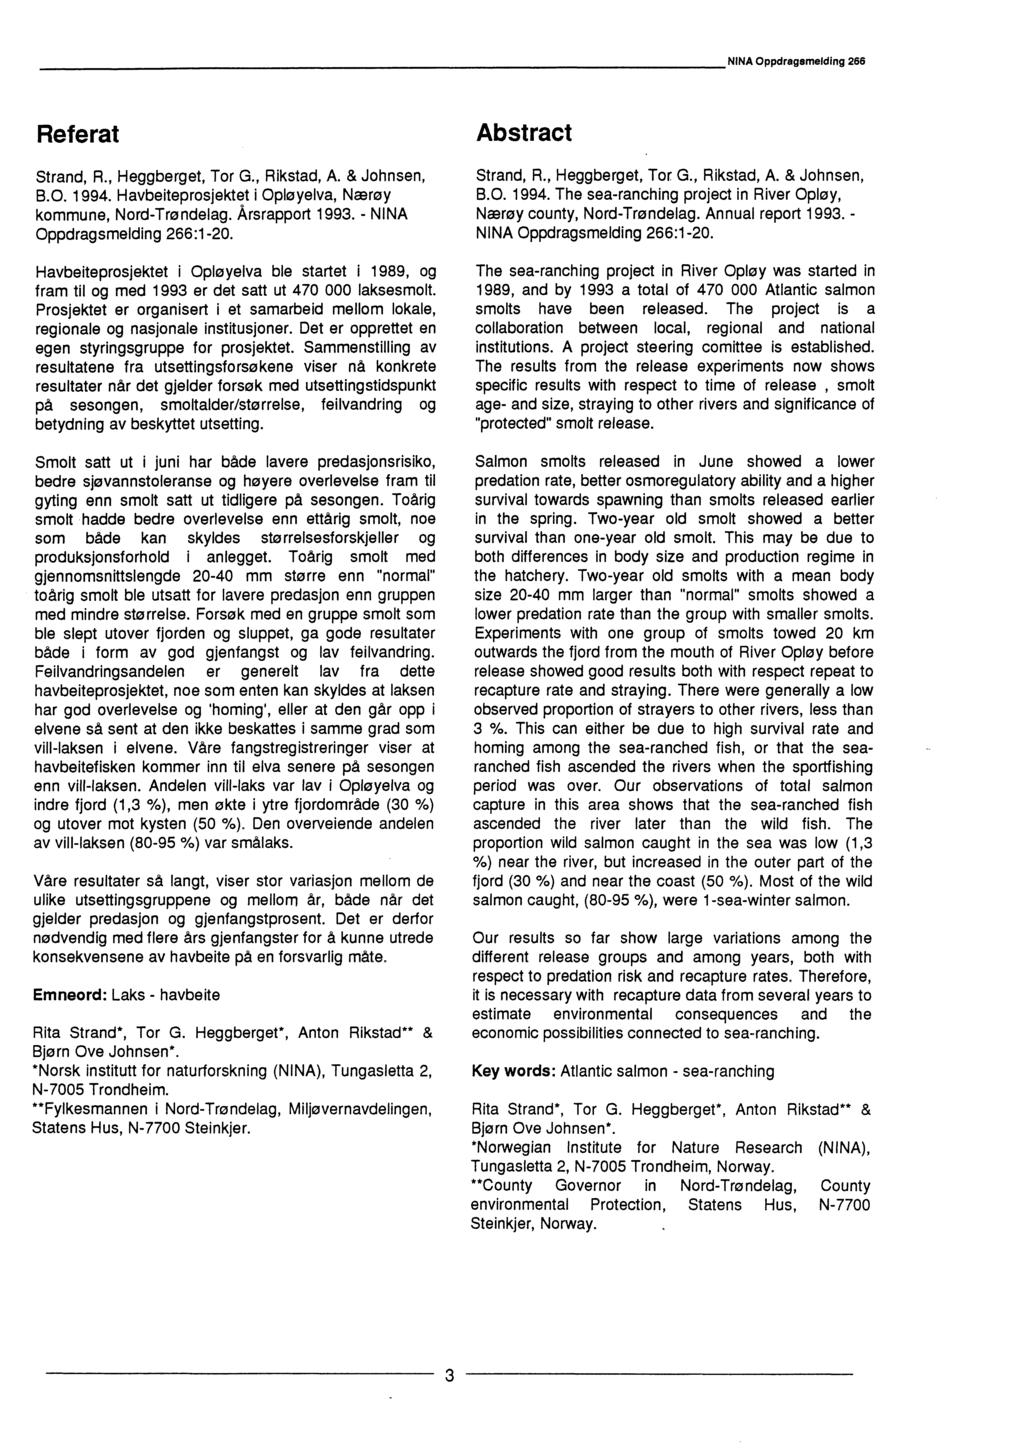 NINA Oppdragsmelding 266 Referat Strand, R., Heggberget, Tor G., Rikstad, A. & Johnsen, B.O. 1994. Havbeiteprosjektet i Opløyelva, Nærøy kommune, Nord-Trøndelag. Årsrapport 1993.